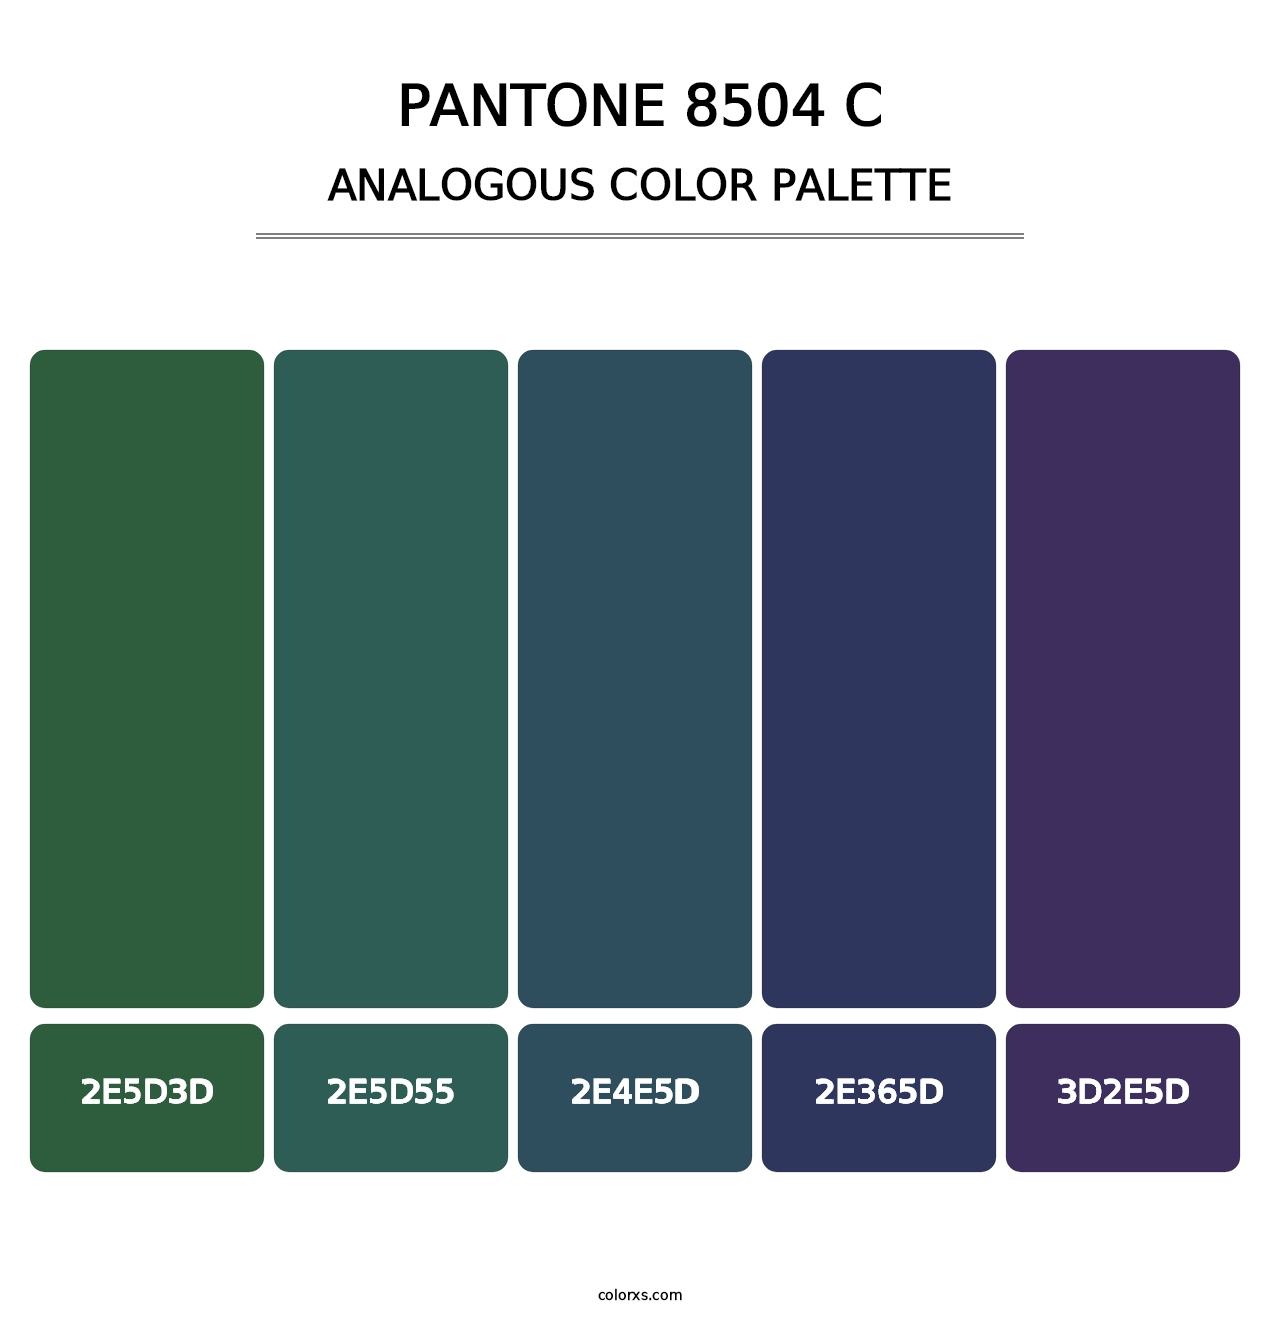 PANTONE 8504 C - Analogous Color Palette